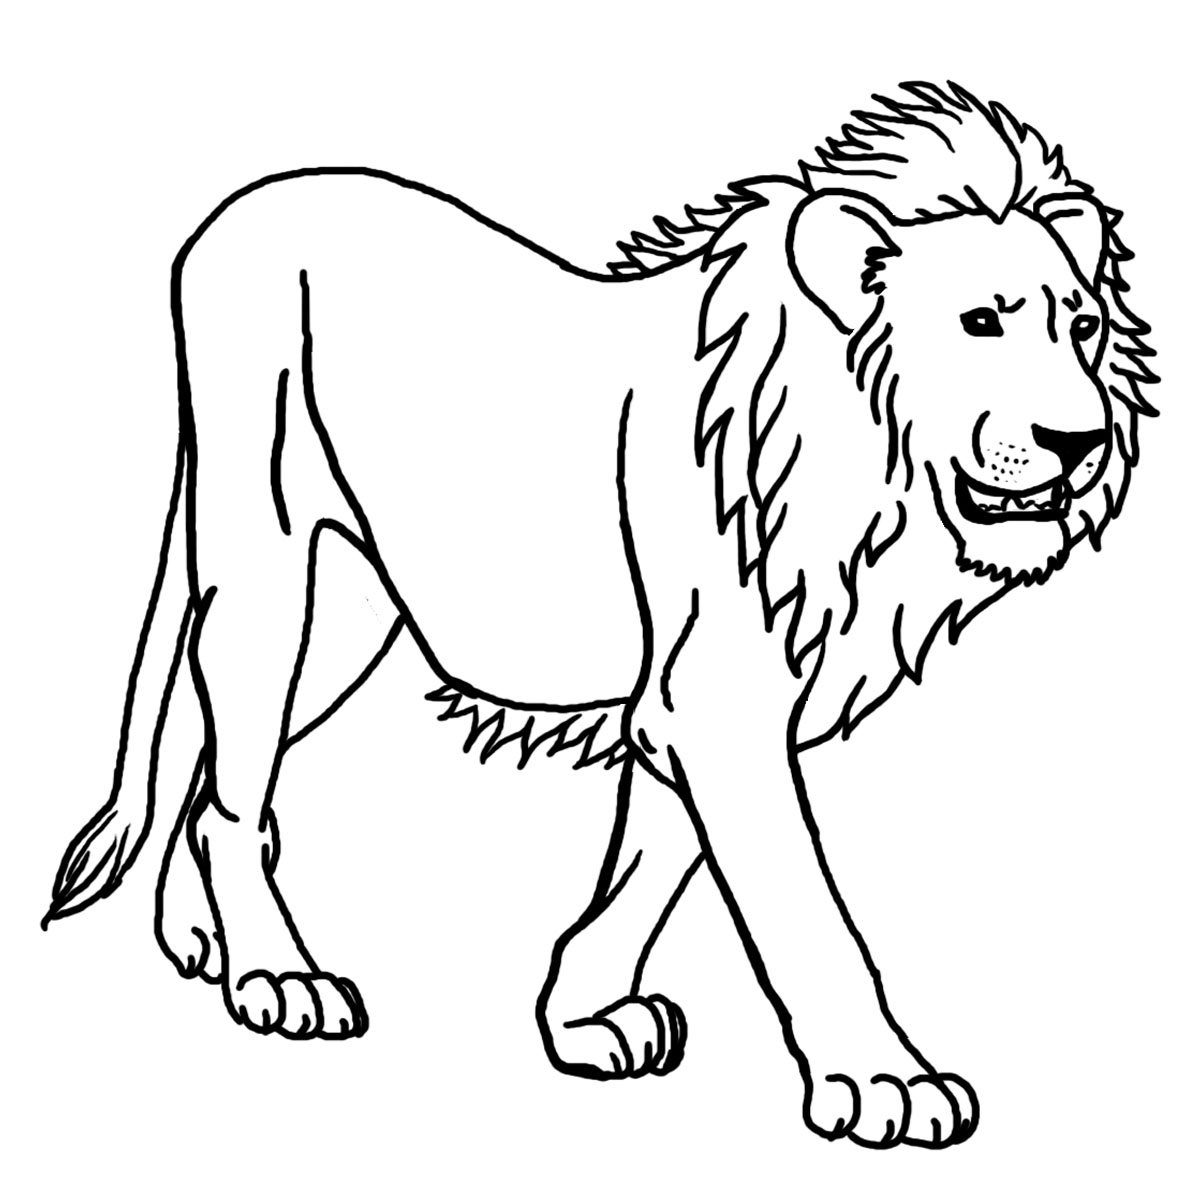 Tuyển tập tranh tô màu con sư tử oai phong mạnh mẽ cho bé   c3nguyentatthanhhpeduvn